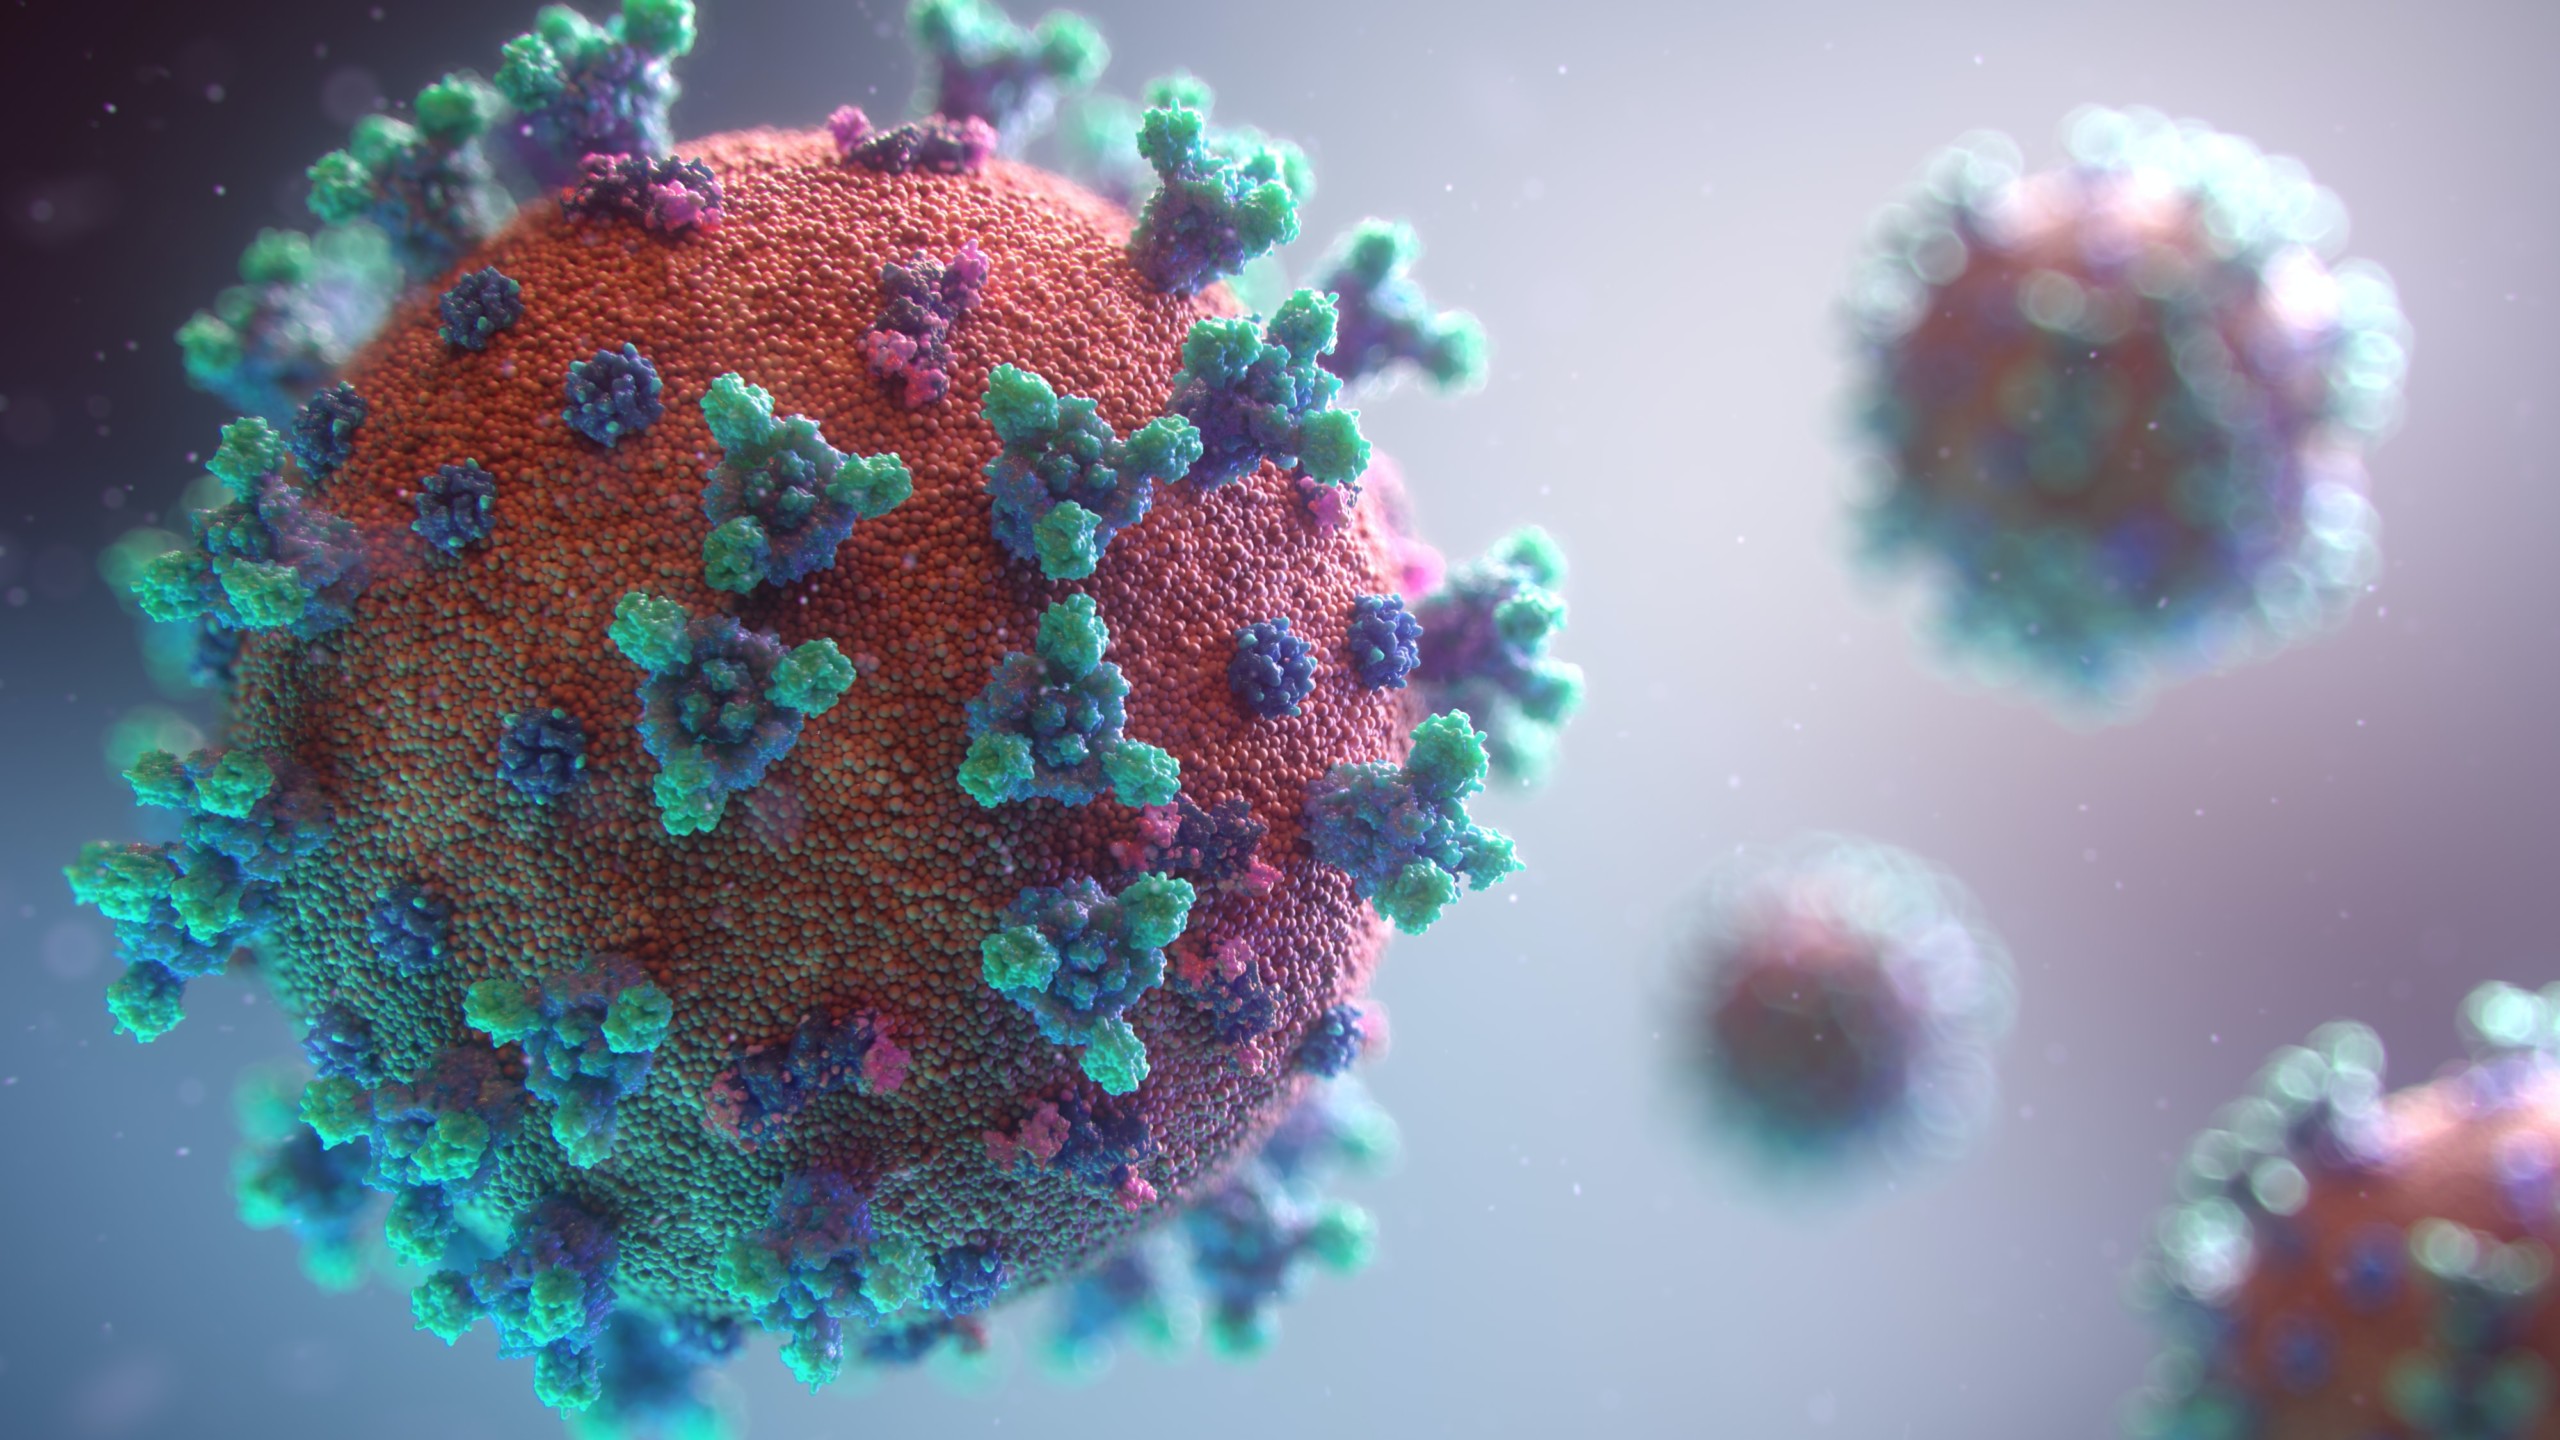 Stilistische Darstellung eines Corona-Virus